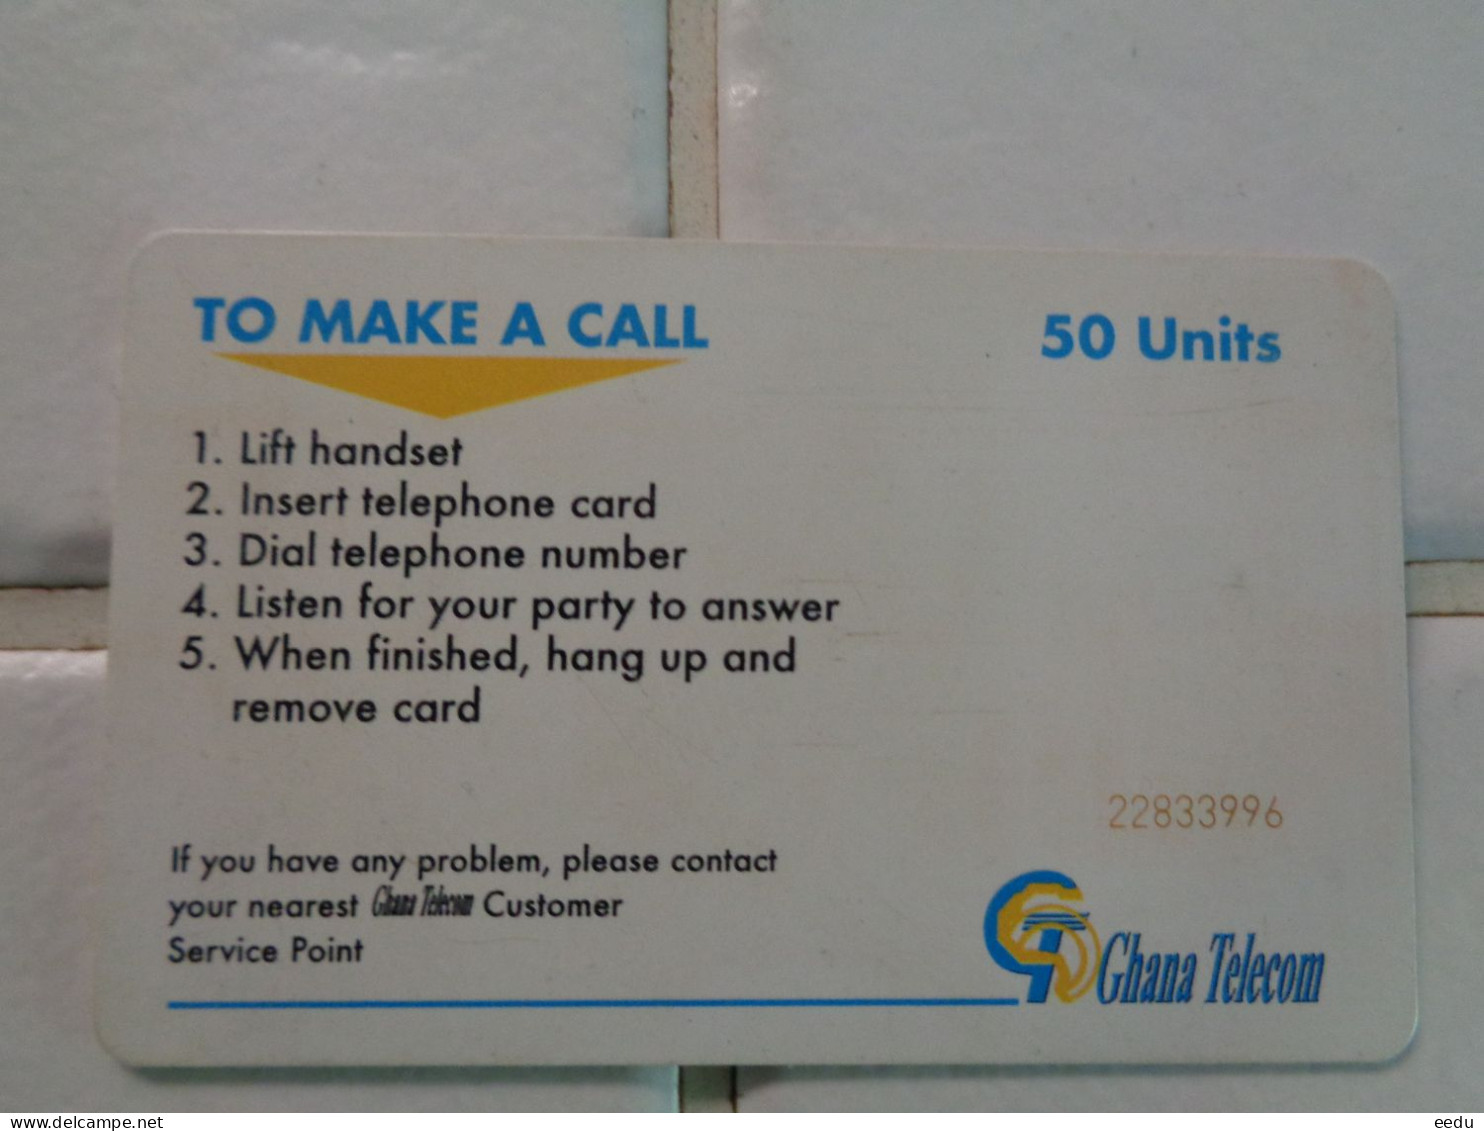 Ghana Phonecard - Ghana